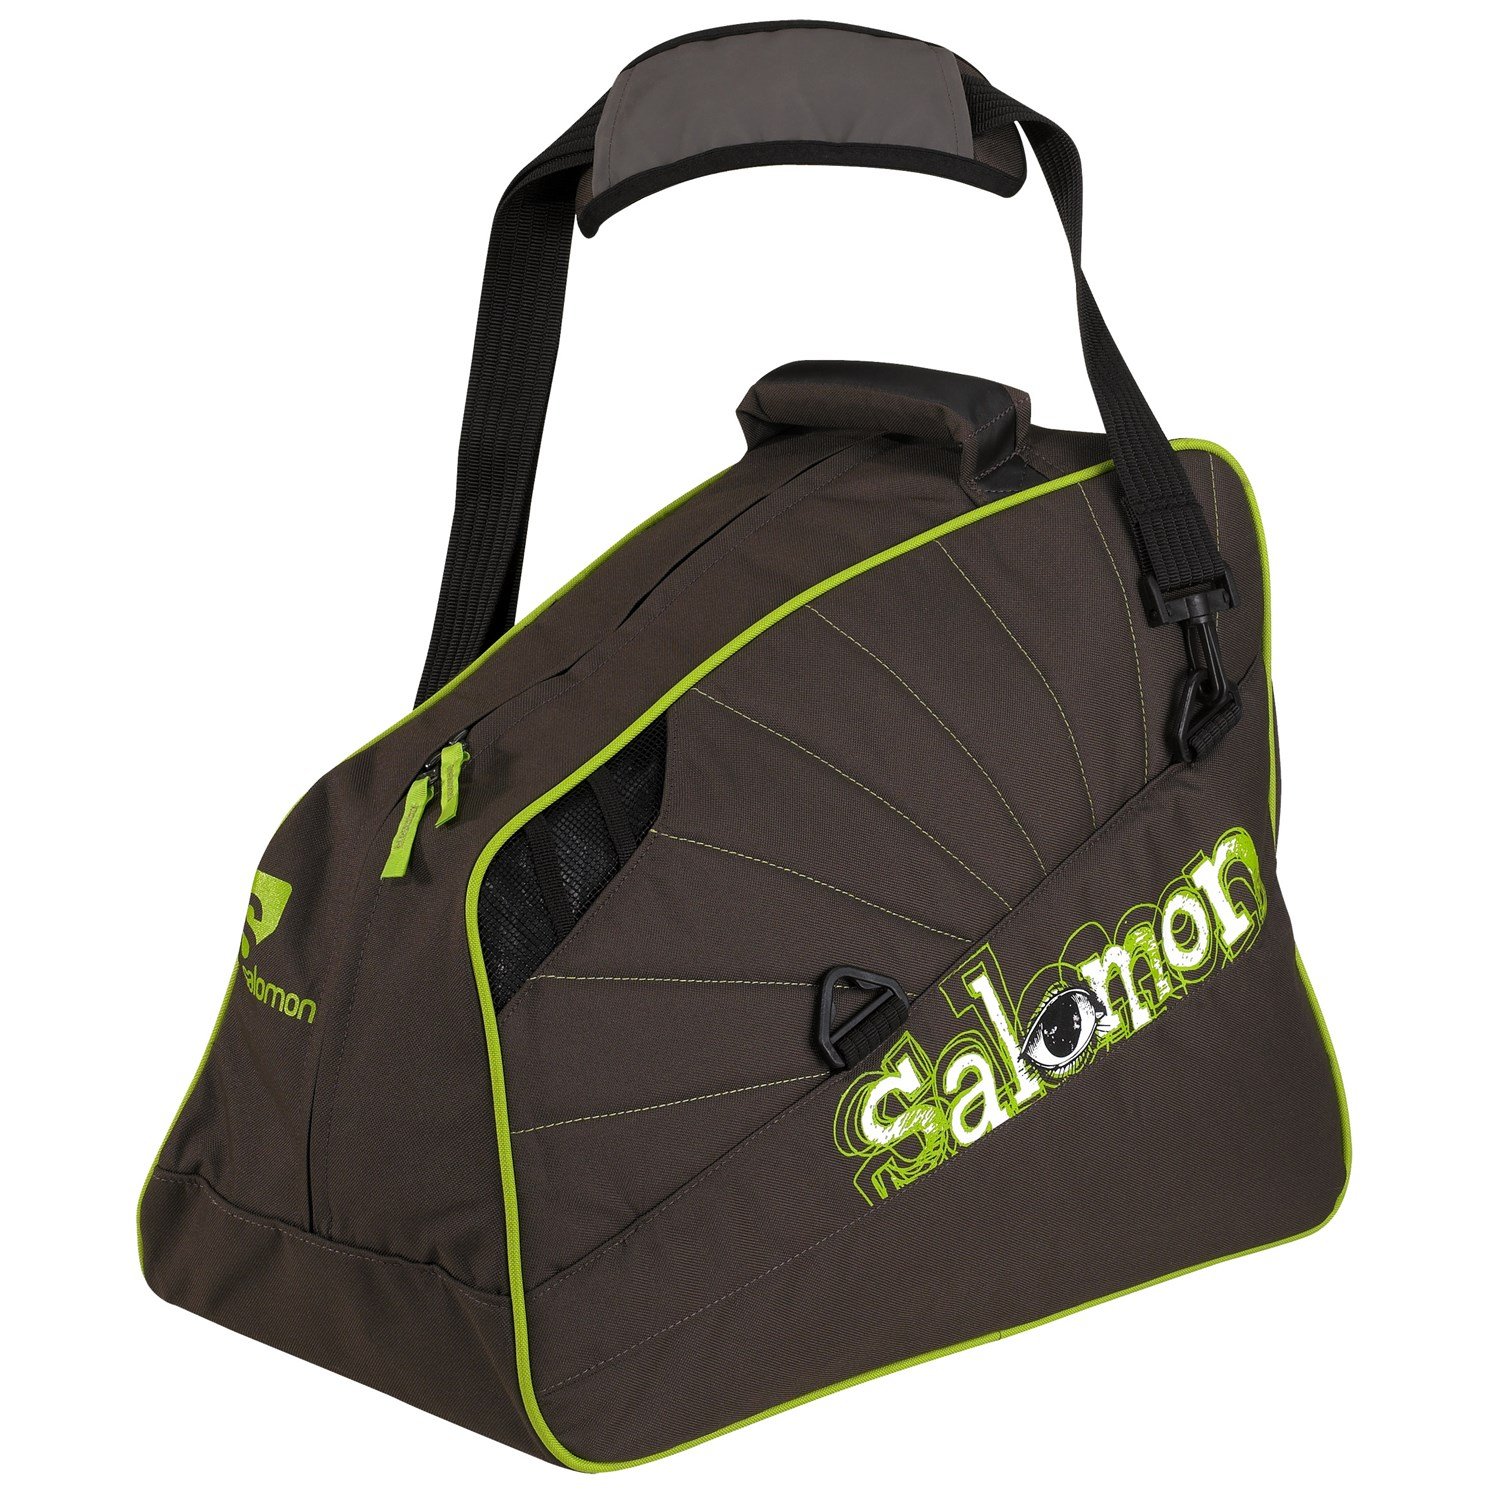 Salomon Ultimate Gear Bag |